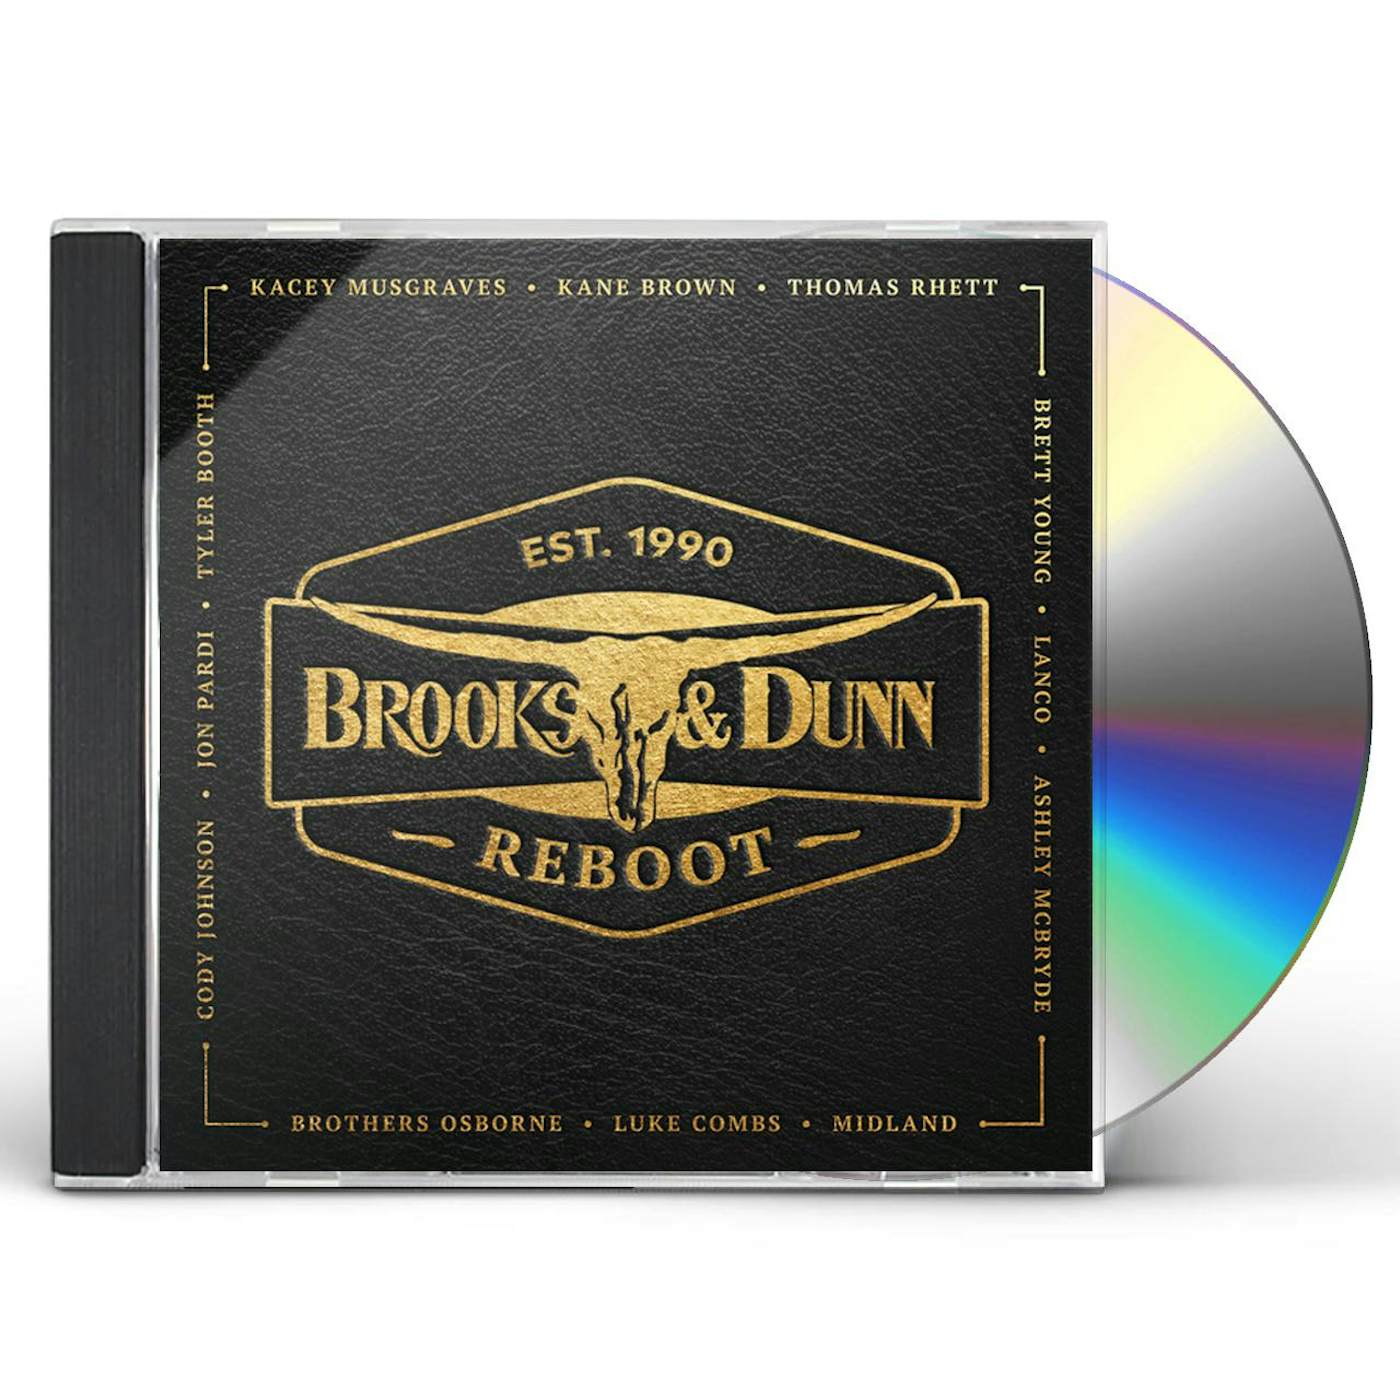 Brooks & Dunn REBOOT CD